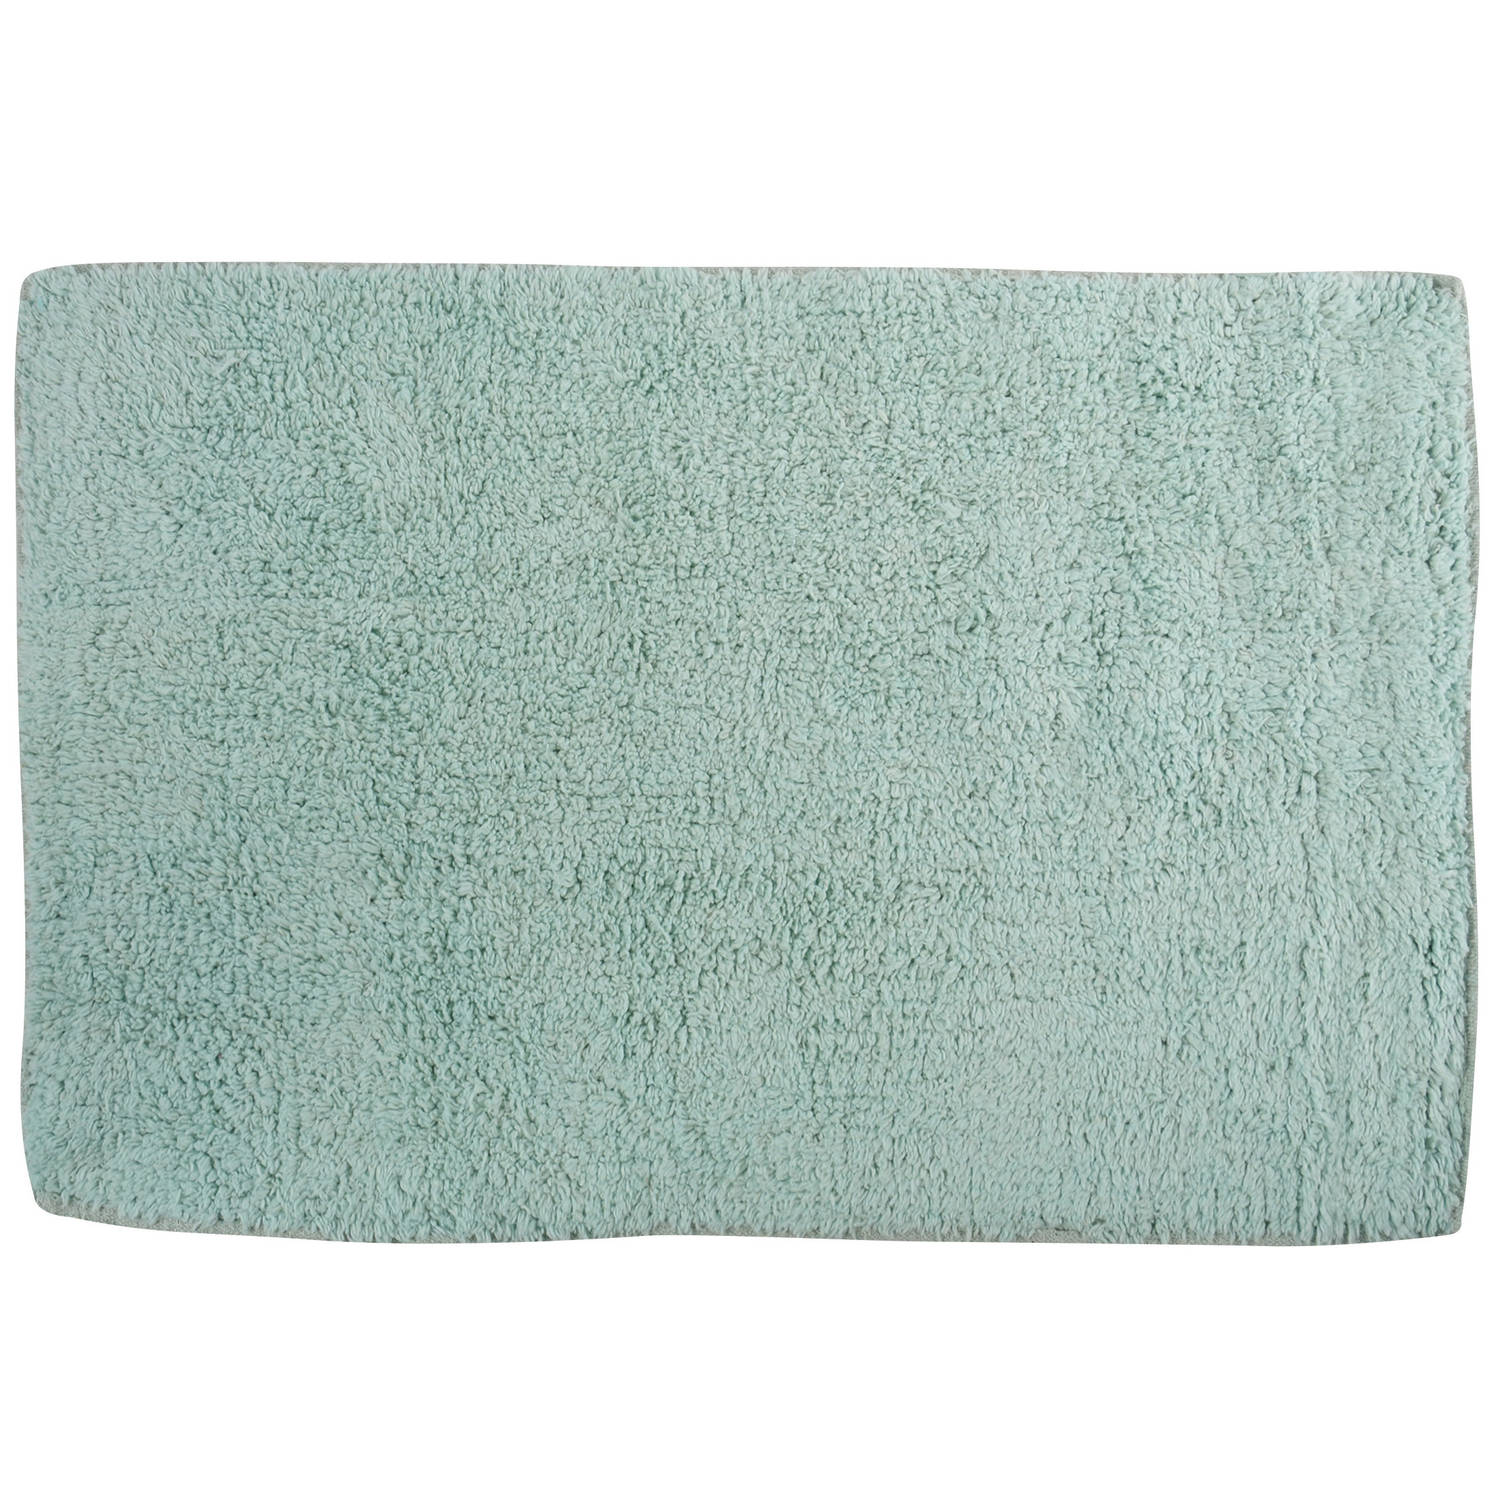 MSV Badkamerkleedje/badmat - voor op de vloer - mintgroen - 45 x 70 cm - polyester/katoen